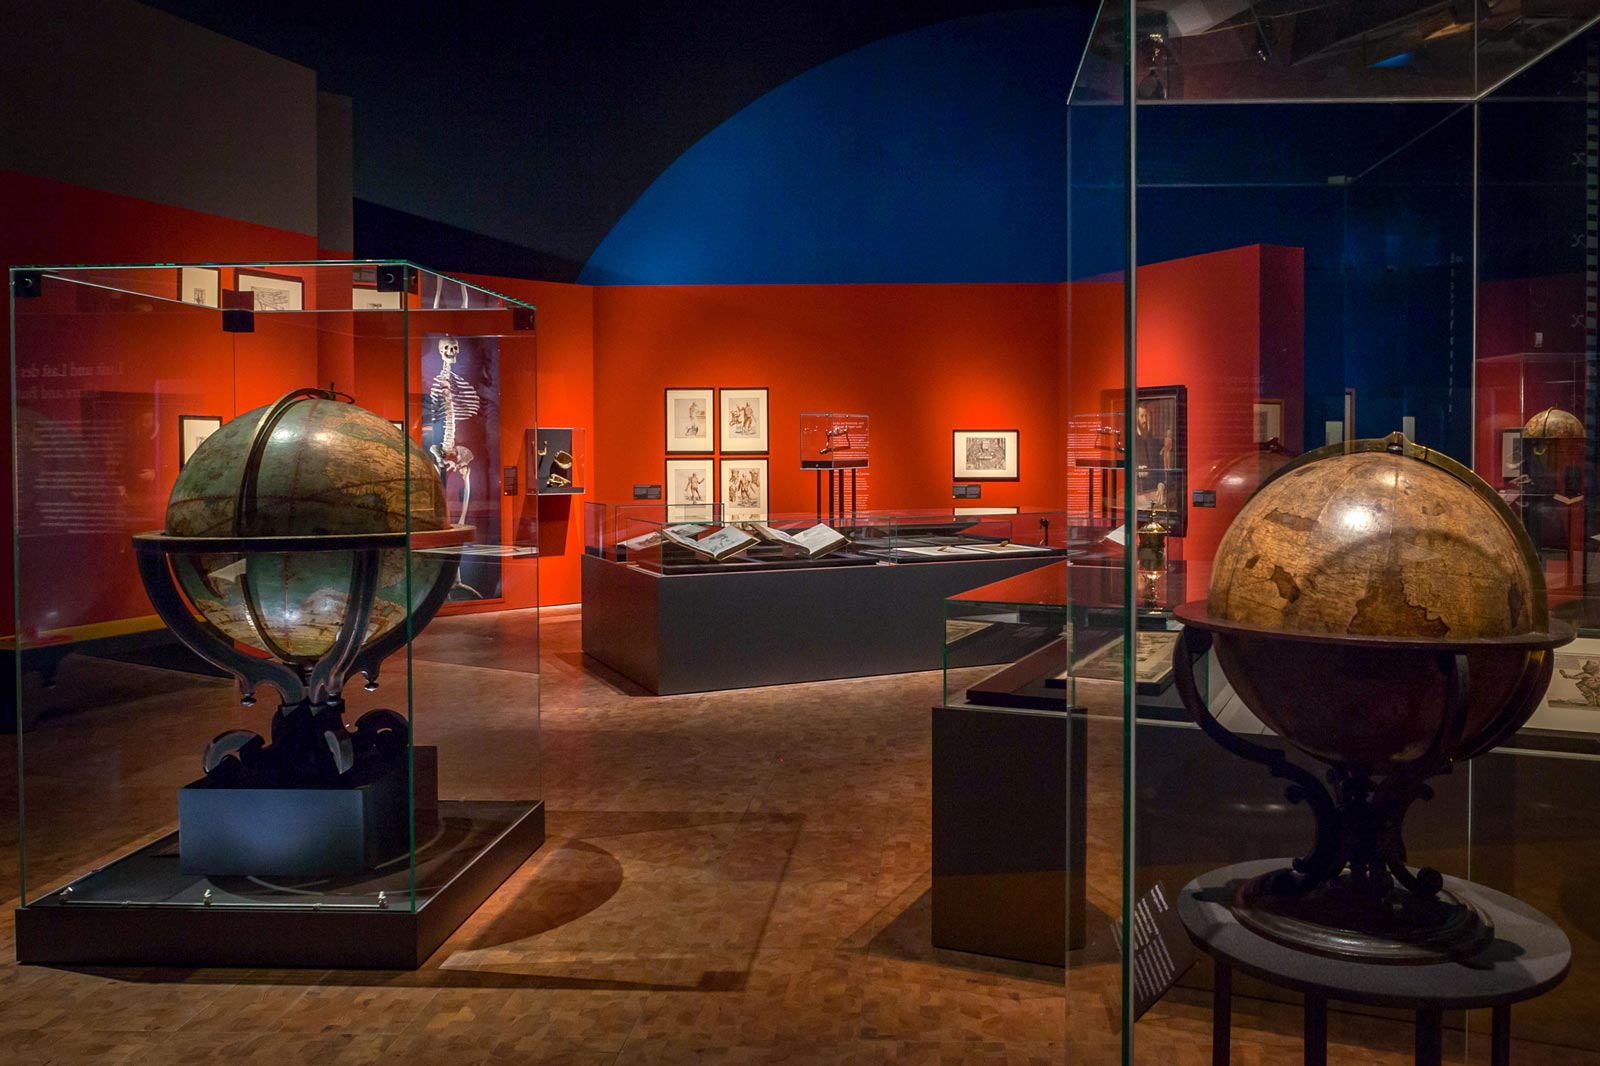 Das Referenzbild für Ausstellungsgestaltung aus der Sonderausstellung Luther, Kolumbus und die Folgen zeigt einen historischen Globus in einer Ganzglasvitrine.